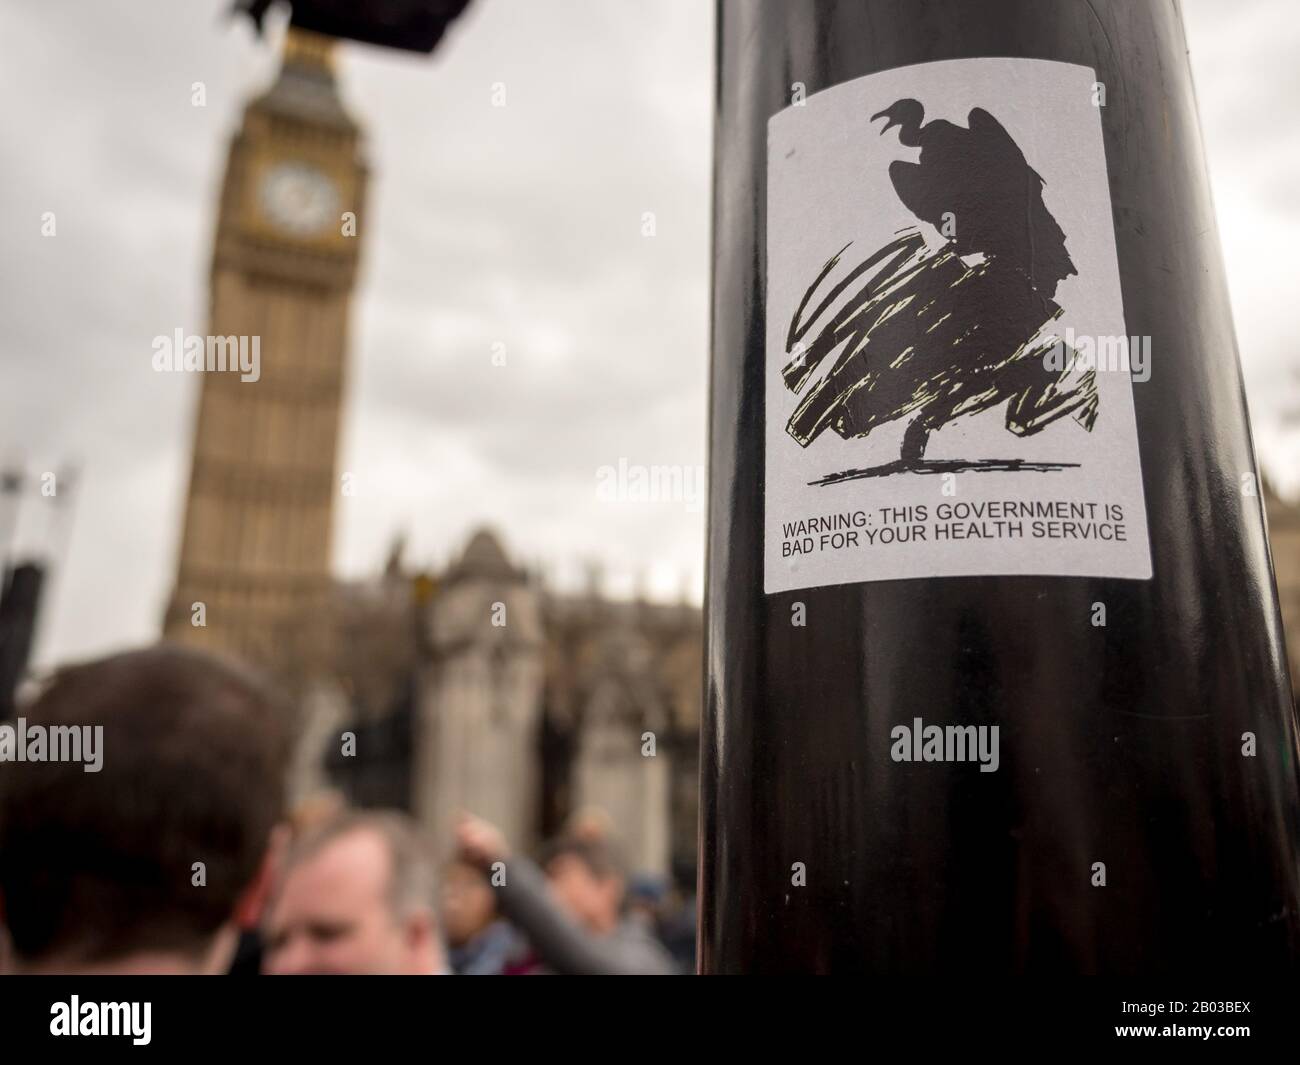 Arte callejero satirizing el Gobierno conservador británico afecta al Servicio Nacional de Salud con el Big Ben en el fondo de blur. Foto de stock